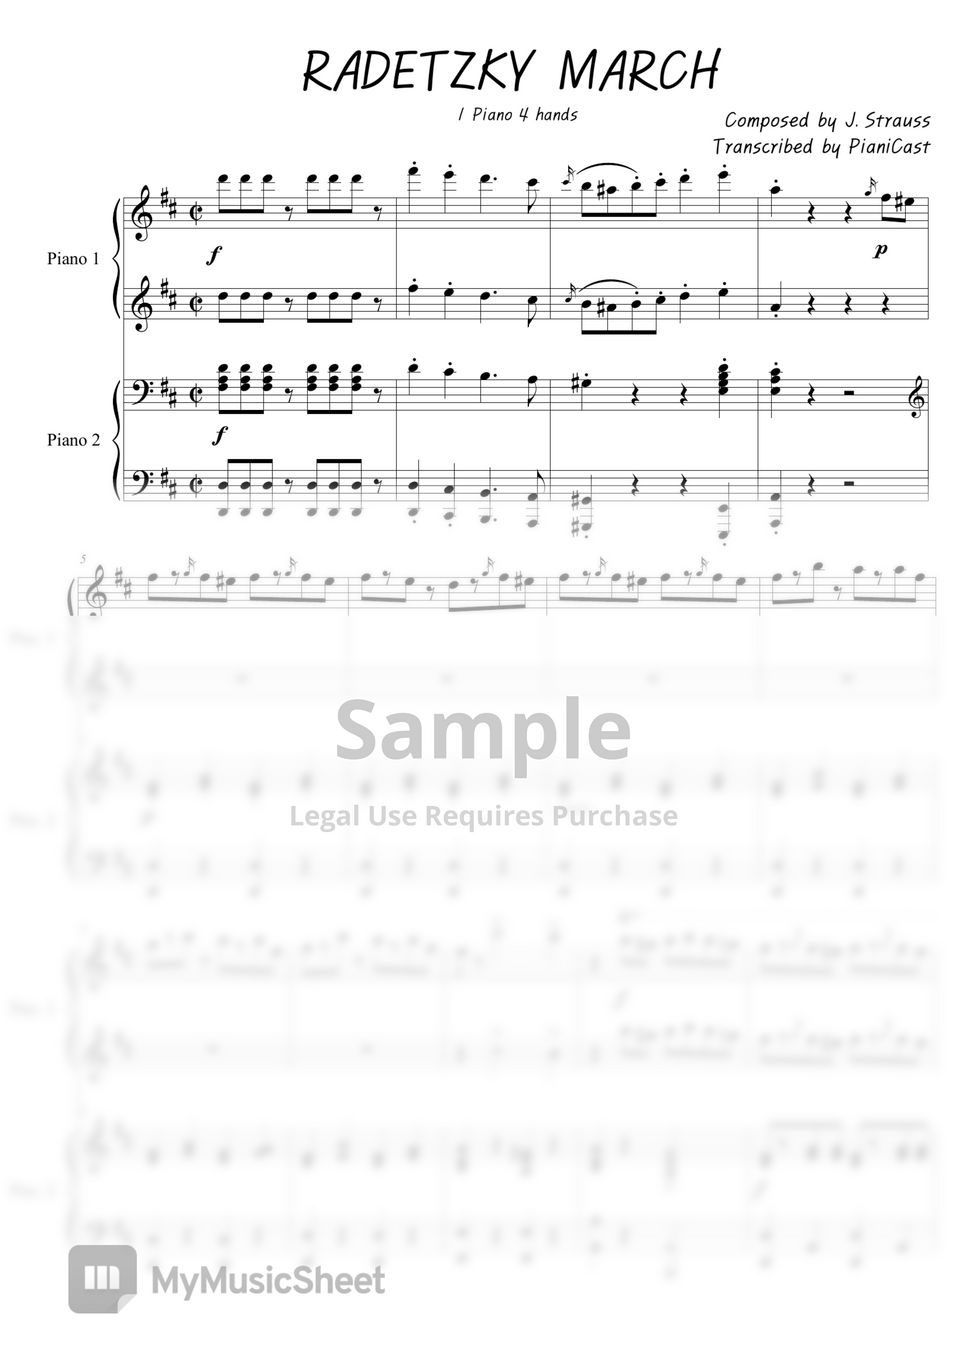 Radetzky March - J. Strauss 1 Piano 4 Hands Duet Sheet